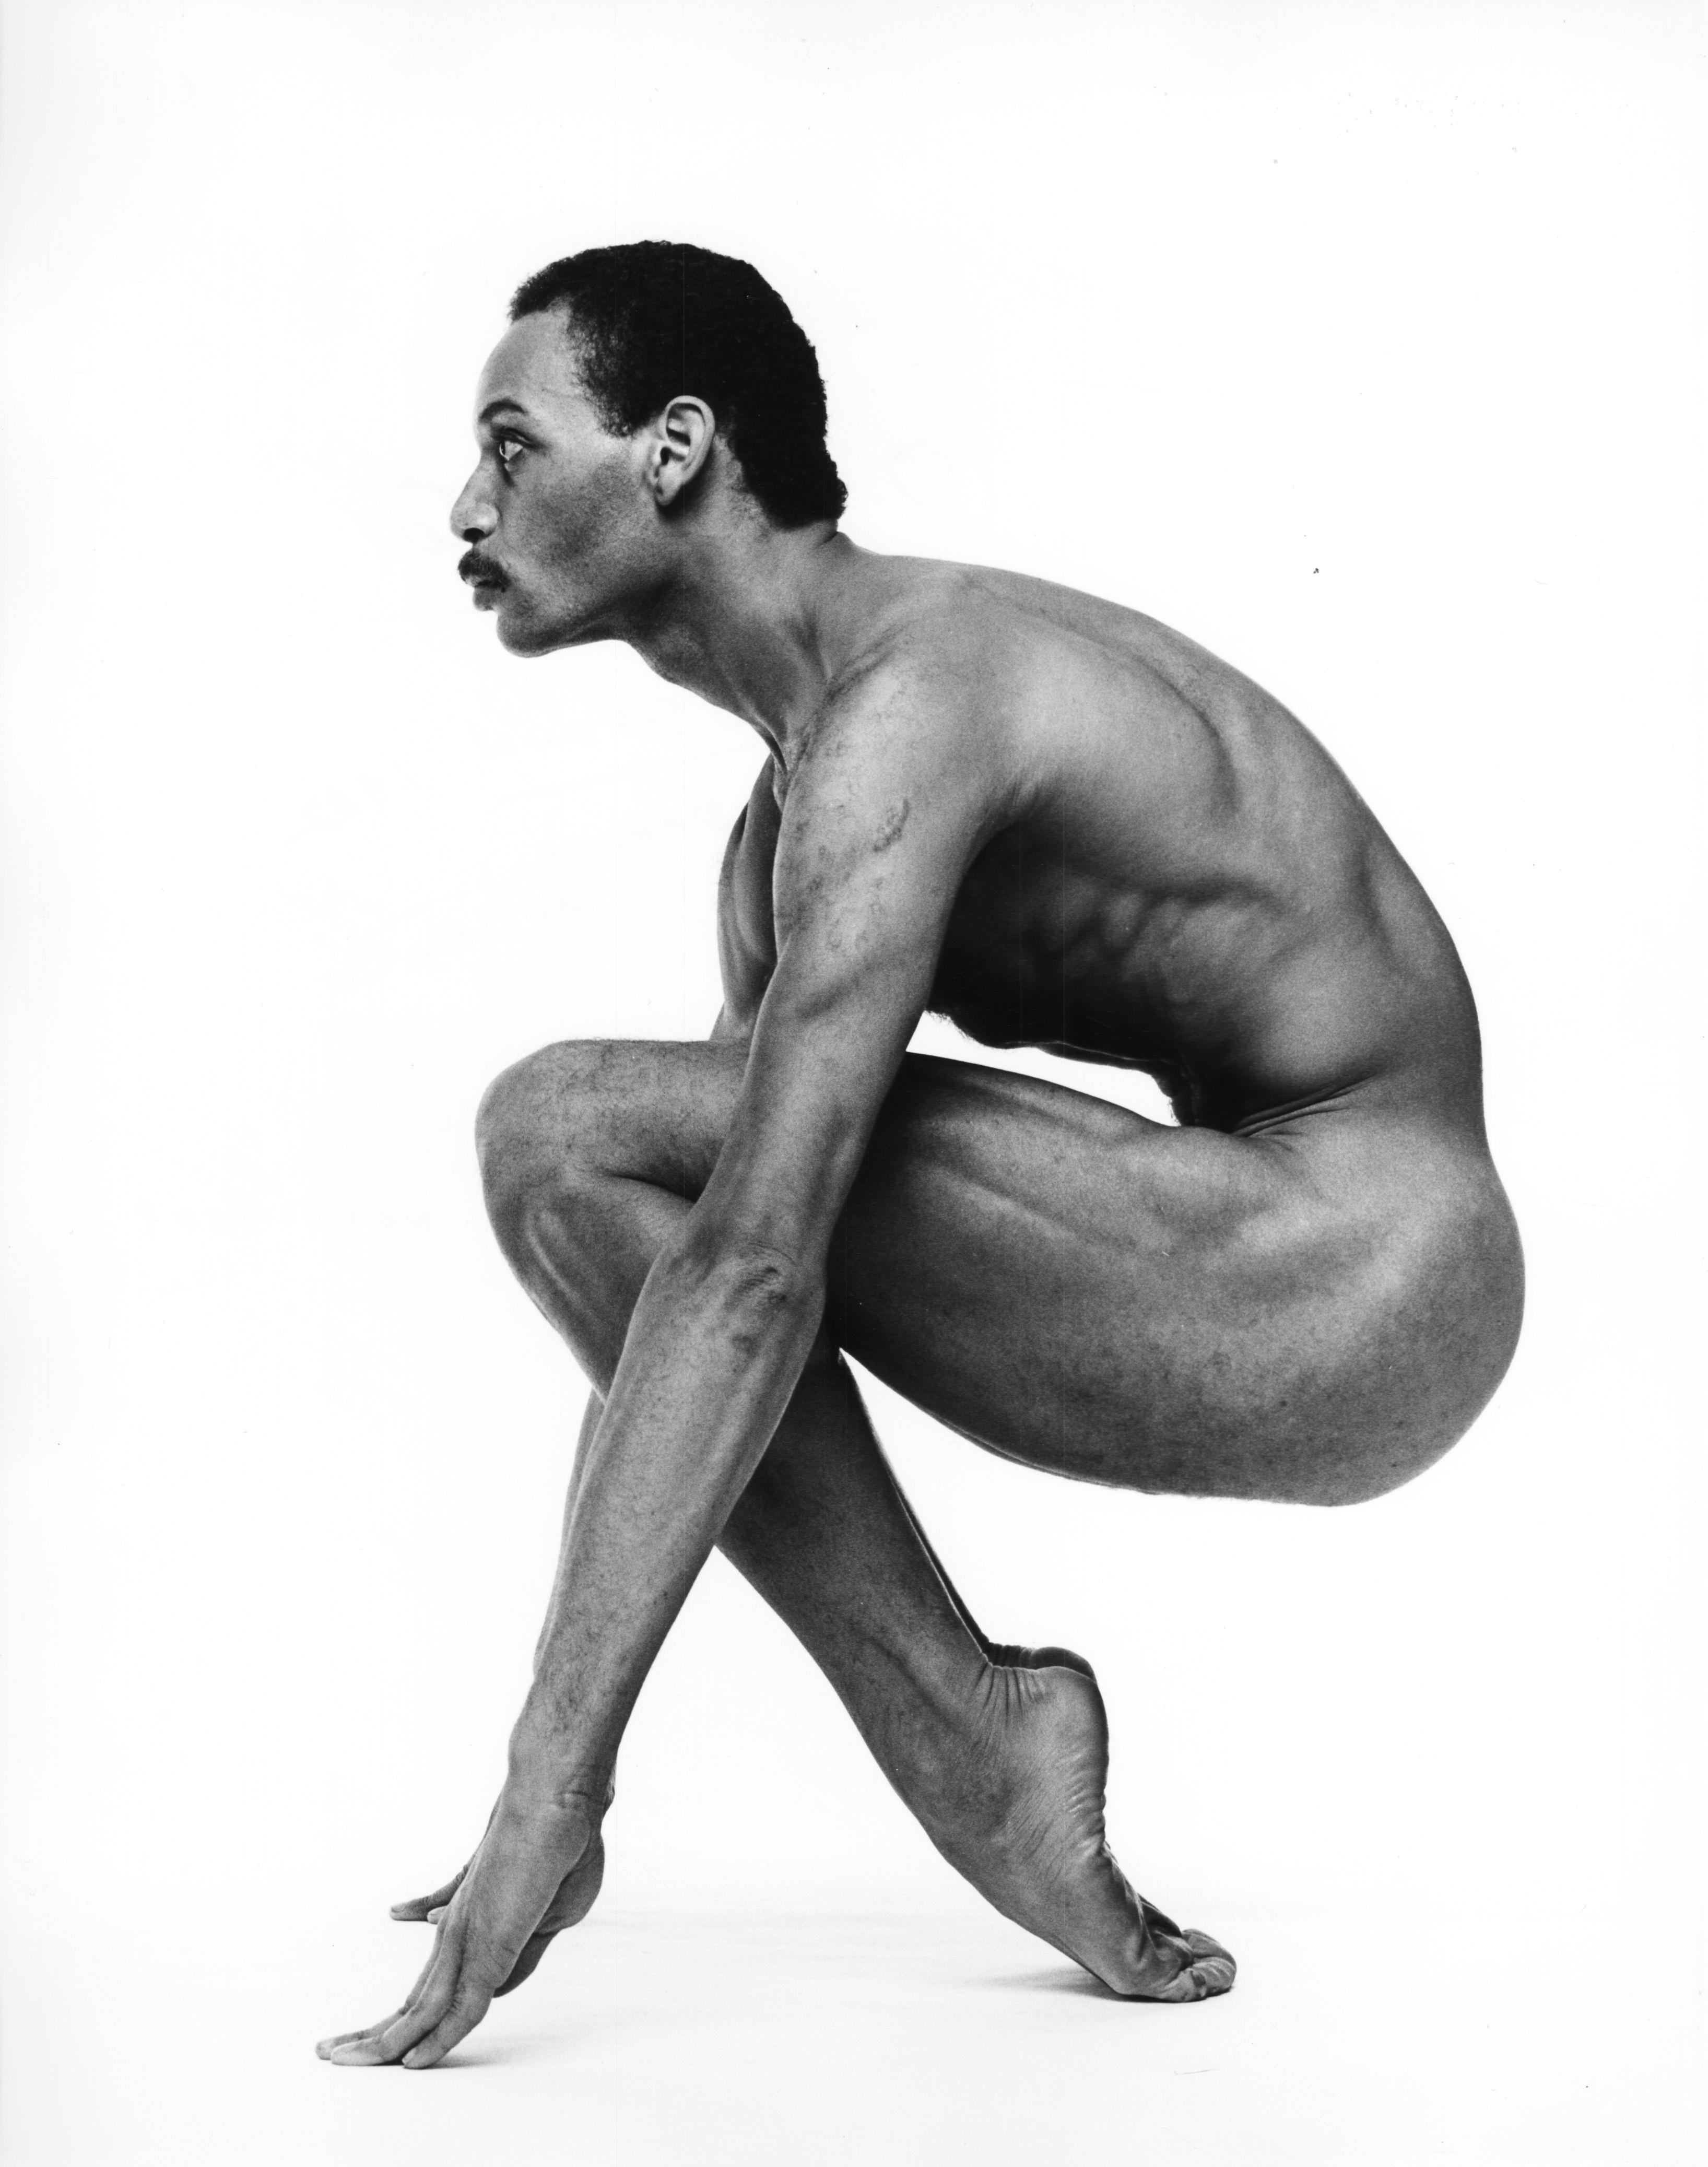 Danseur Kevin Brown, photographié nu pour le magazine After Dark, signé par Jack